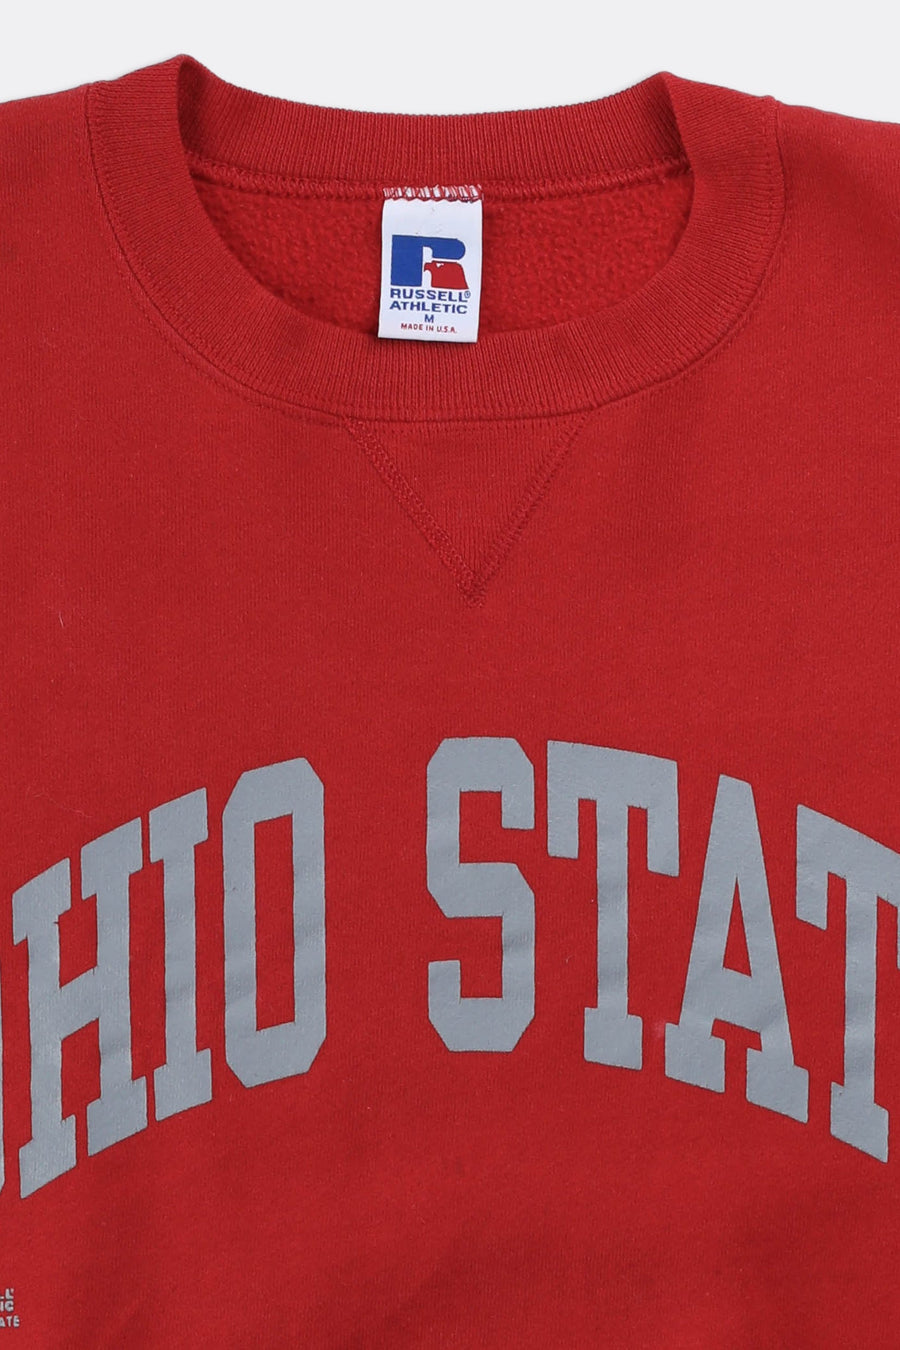 Vintage Ohio State Sweatshirt